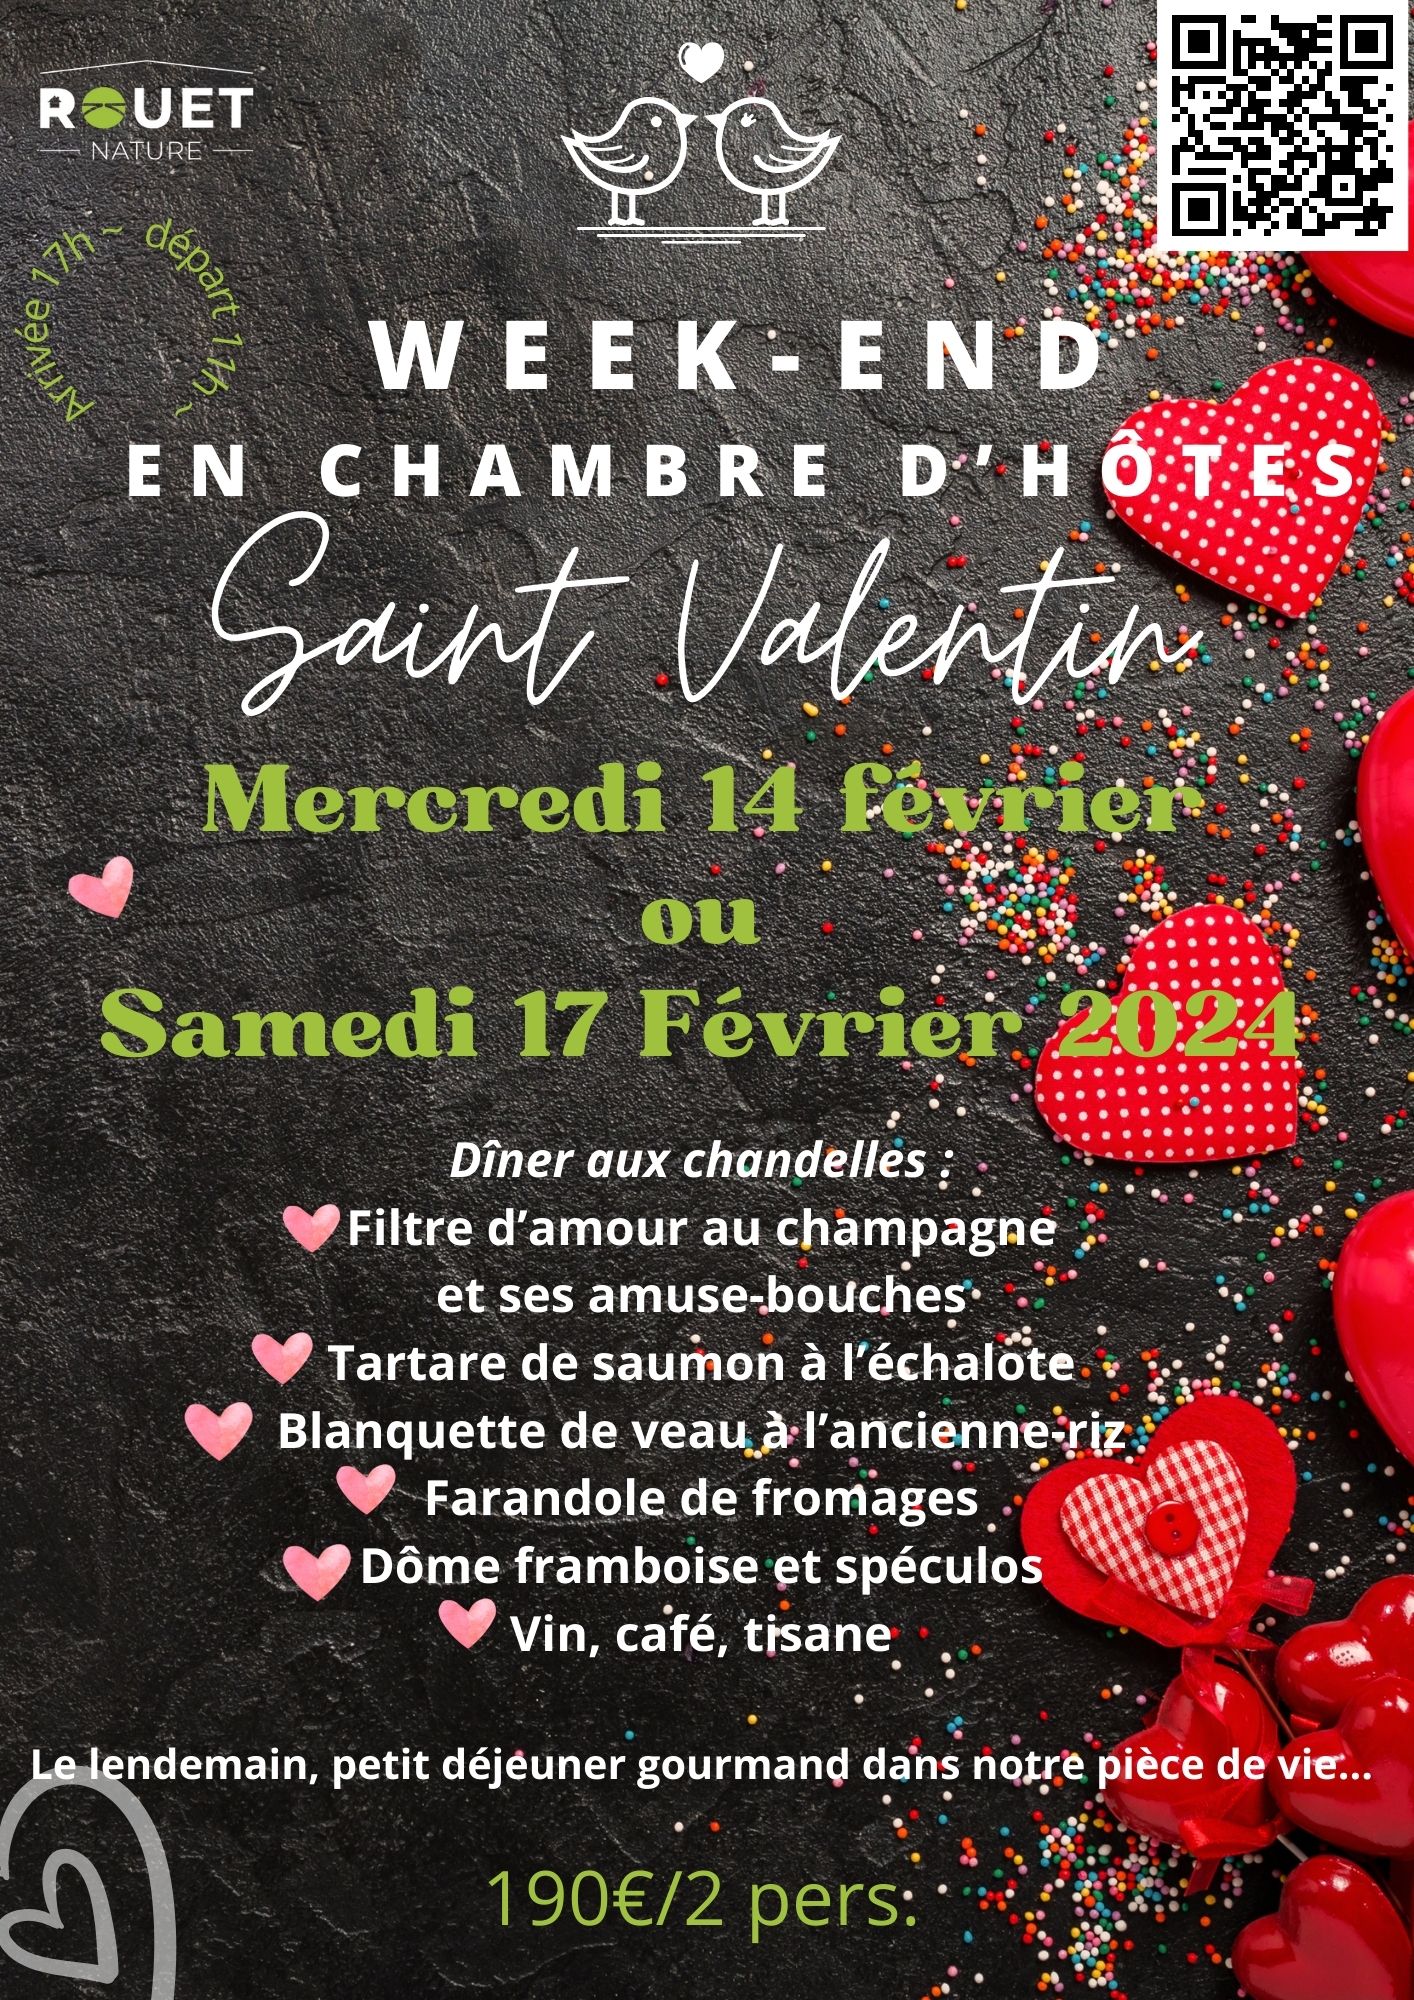 Week-end Saint Valentin en France